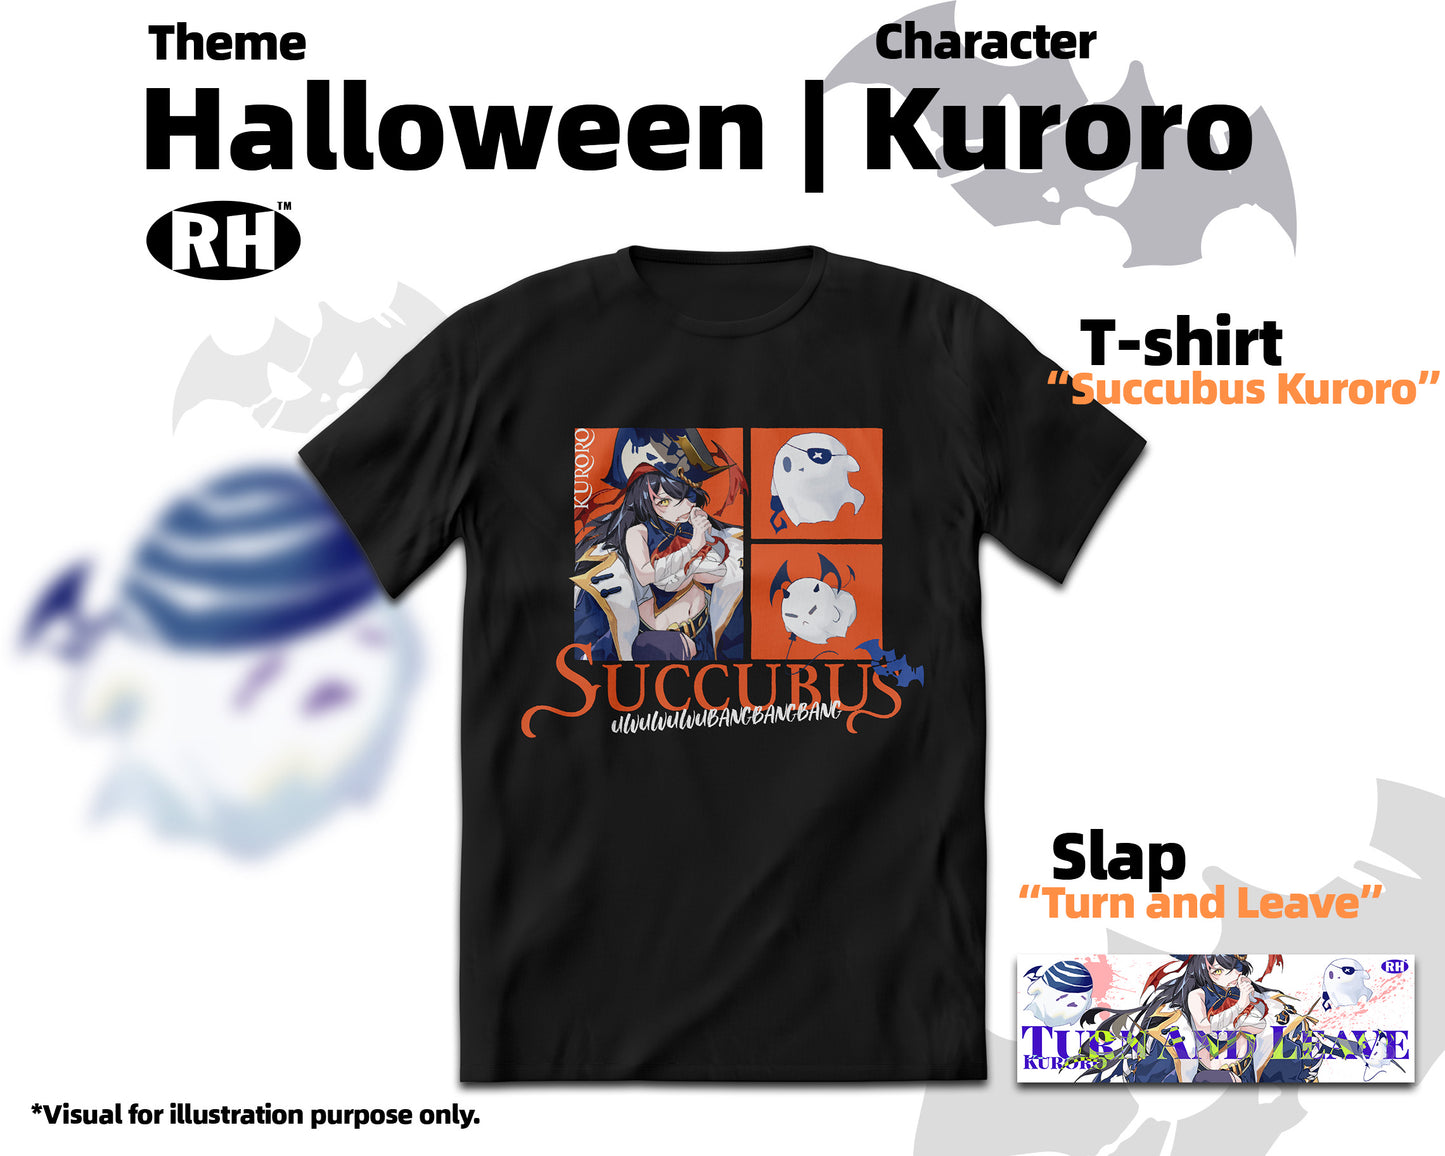 "Succubus Kuroro" | RH Original Unisex T-shirt